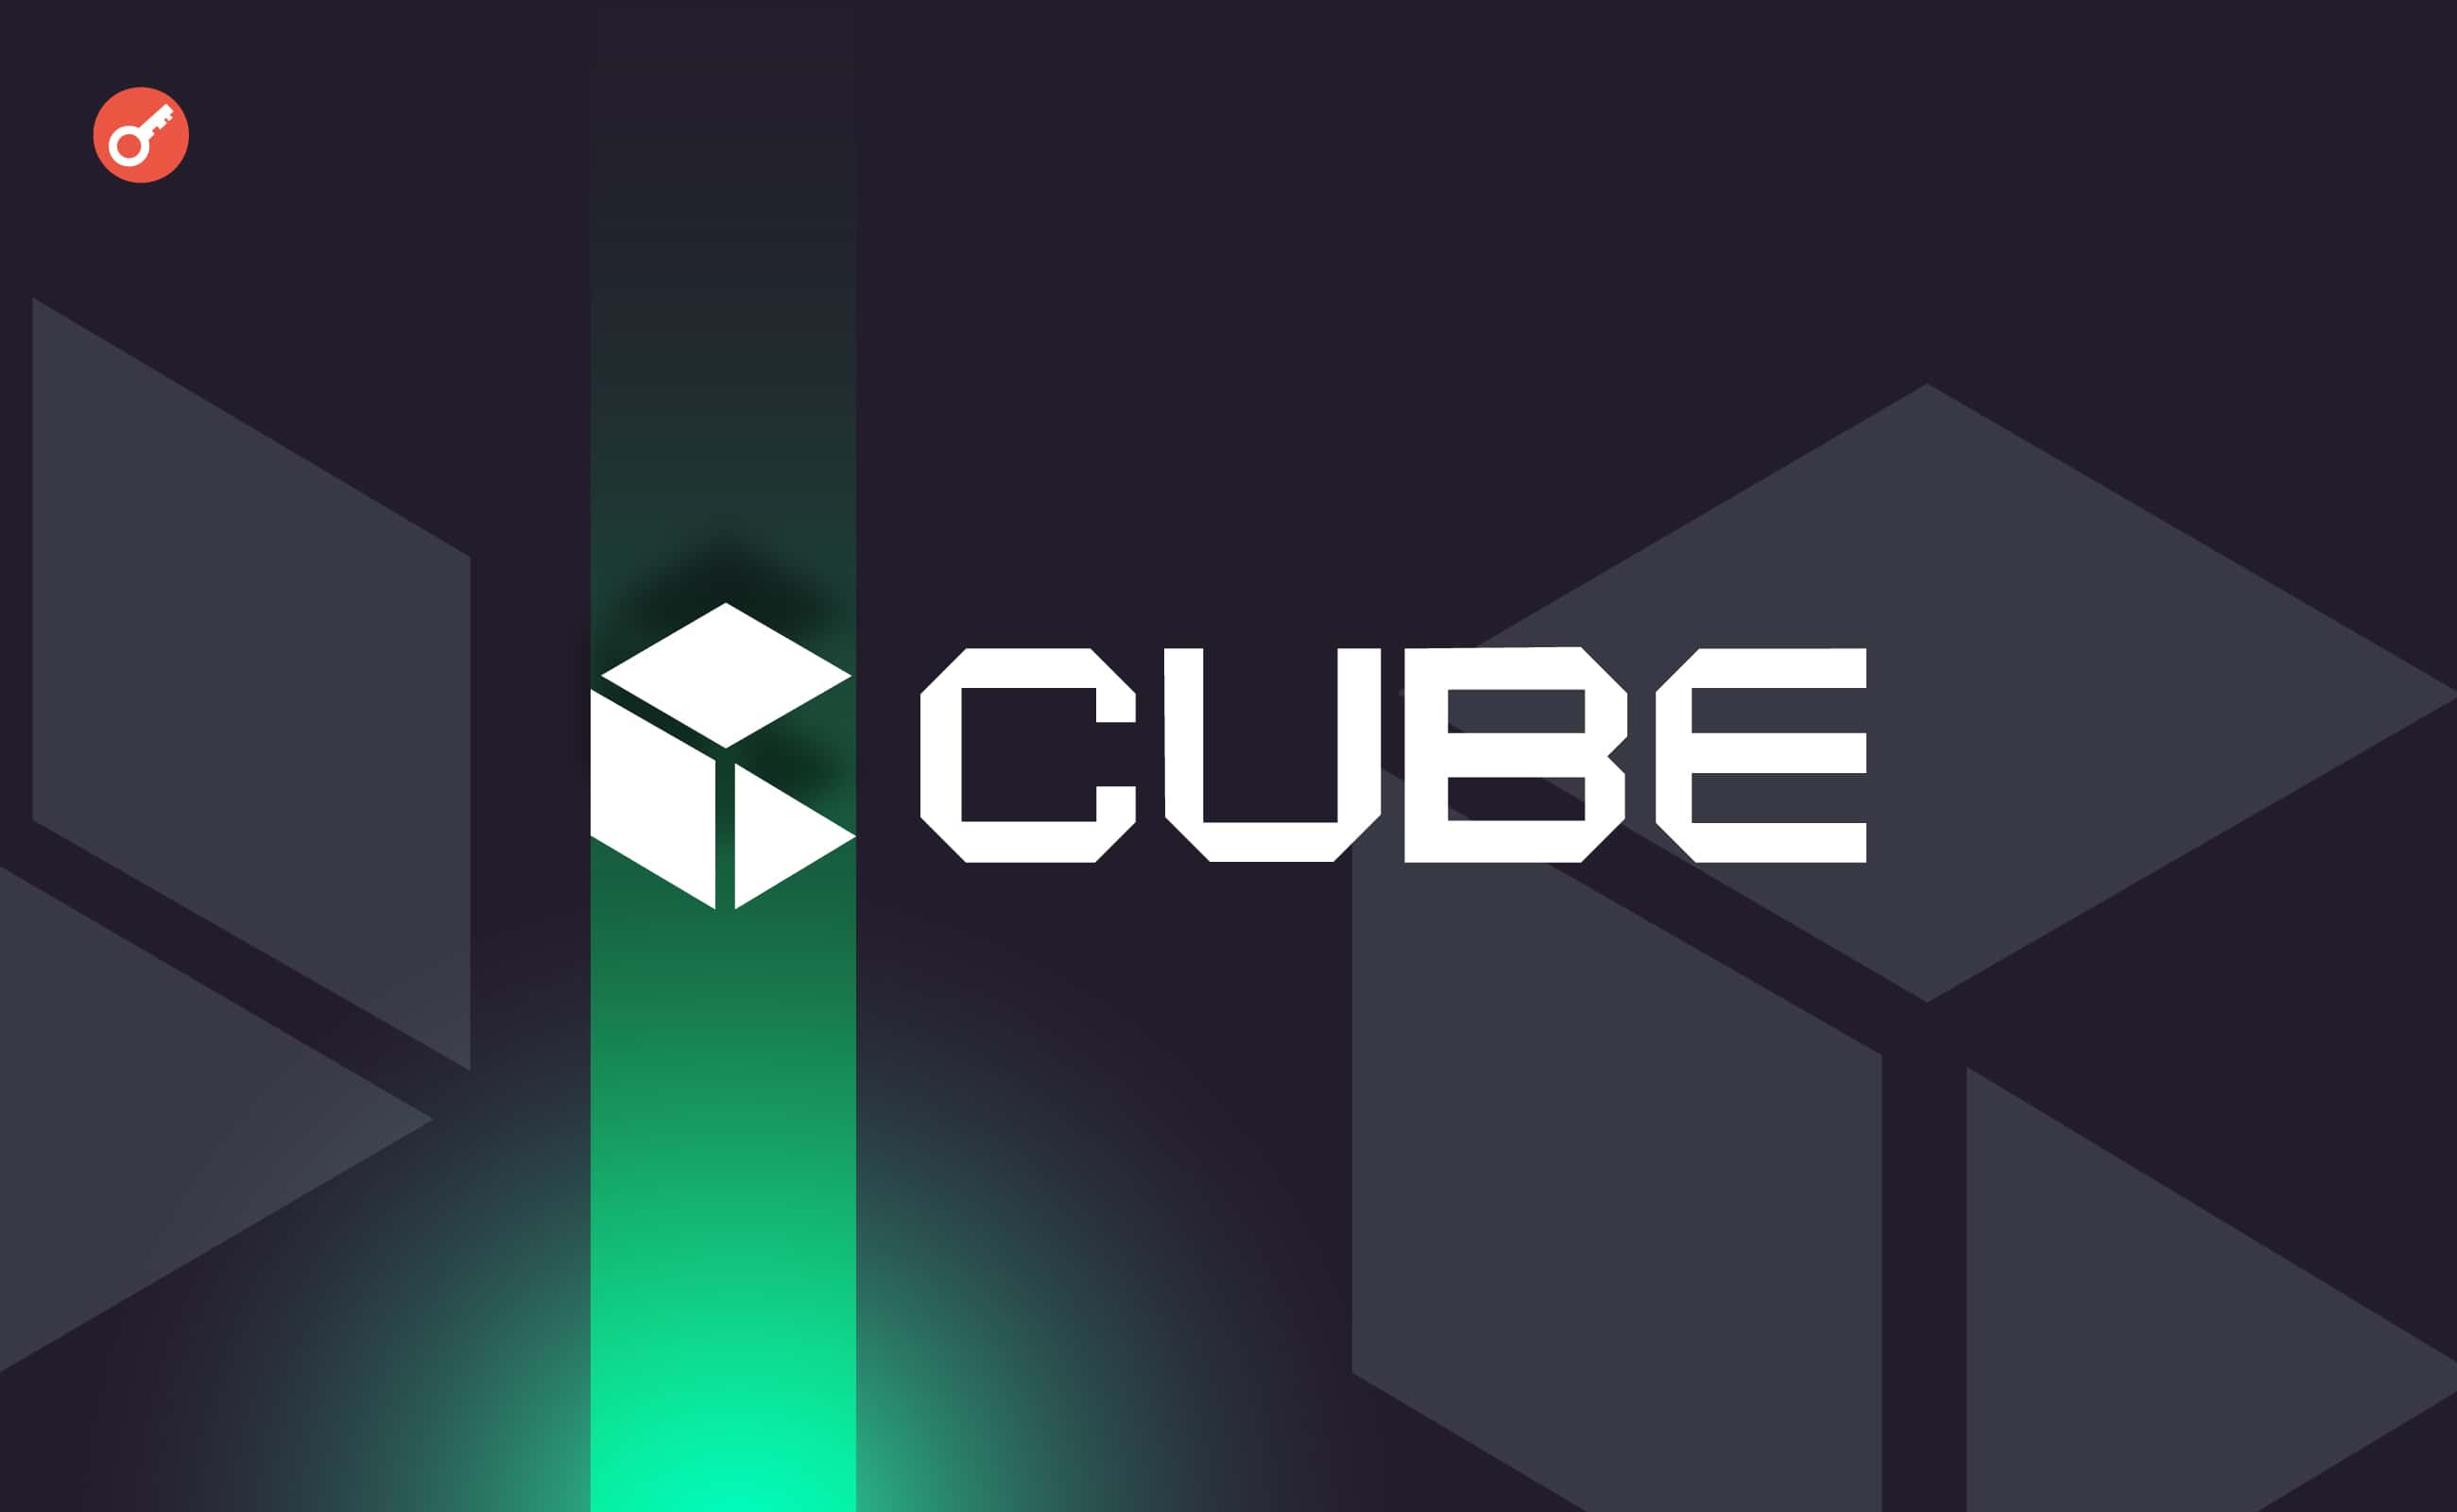 Cube.Exchange залучила $9 млн інвестицій. Головний колаж новини.